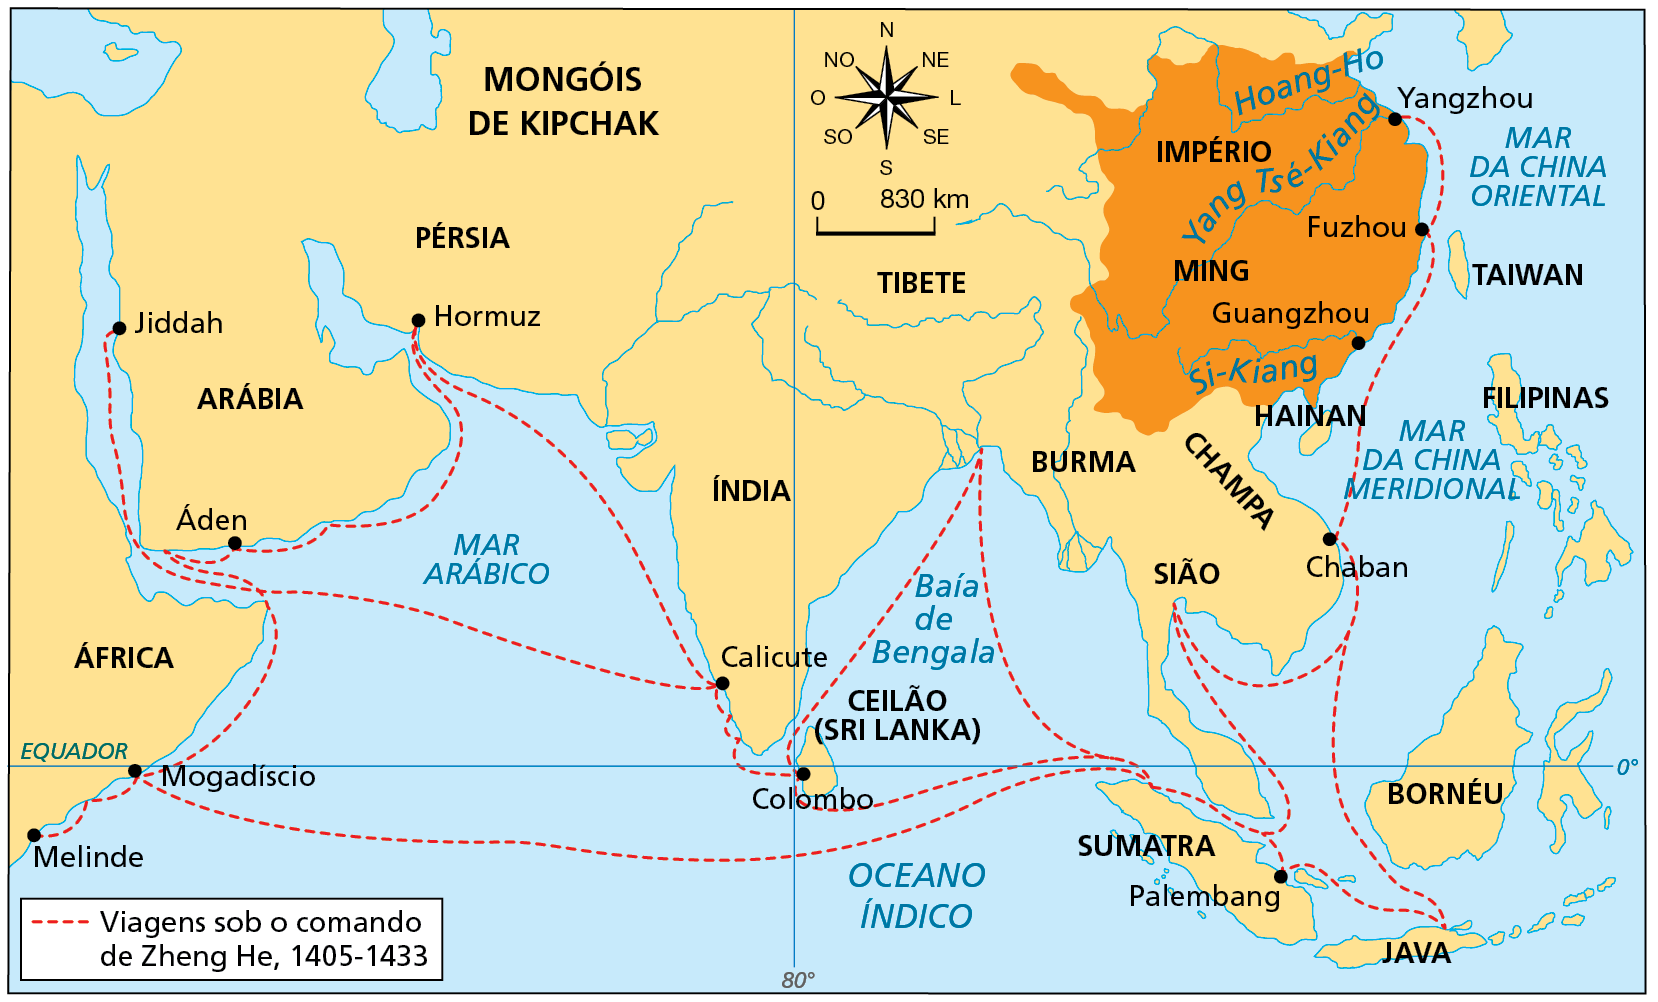 Mapa. Navegações de Zheng He. Século quinze. Mapa representando rotas de viagem em uma área que compreende parte do continente asiático e da costa leste da África. Destaque na cor laranja para o Império Ming, se estendendo, no litoral, desde o litoral do Mar da China Oriental até ao litoral do Golfo de Tonkim. E, no interior do continente, acompanhando parte do curso dos rios Amarelo (Hoang-Ho), Azul (Yang Tsé-Kiang) e Si-Kiang. Estão destacados por meio de texto: a África, a Arábia, a Pérsia, a Índia, o Tibete, Burma, Sião, Champa e Hainan; as ilhas de Taiwan, Filipinas, Bornéu, Java, Sumatra, Ceilão (hoje Sri Lanka), a cidade de Guangzhou e as cidades de parada da rota. Uma linha pontilhada vermelha indica: Viagens sob o comando de Zheng He. 1405-1433. A linha pontilhada vermelha parte de Yangzhou, na foz do Rio Azul, no Império Ming, contornando a costa pelo Mar da China Oriental, seguindo pelo Estreito de Formosa até a cidade de Fuzhou, seguindo para o sul pelo Mar da China Meridional, até Chaban, na Península da Indochina. No rumo sul, a rota se divide. Um trecho segue rumo ao Sul até a Ilha de Java, e de lá, até a Ilha de Sumatra, aportando em Palembanbg. Outro trecho, contorna a Península da Indochina até Sião, no Golfo de Sião, contornando-o até atingir o Estreito de Malaca, onde a rota se divide: um trecho seguindo para o Leste, aportando em Palembang, na Ilha de Sumatra, depois, seguindo para Sudeste, até a Ilha de Java, e retornando na direção norte à rota que segue até Chaban. O outro trecho segue na direção oeste a partir do Estreito de Malaca, atravessando o Oceano Índico até a costa leste da África, aportando em Mogadiscio, na altura da linha do Equador, e seguindo para o Sudoeste, até cidade de Melinde. A partir de Mogadiscio, outro trecho da rota segue para o norte, contornando o Chifre da África até o Golfo de Áden, aportando na cidade de Áden, contornando a Península Arábica até Hormuz, na entrada do Golfo Pérsico, e de lá, partindo na direção sudeste pelo Mar Arábico, até a costa oeste da Índia, aportando em Calicute. Em Calicute, a rota se divide. Há um trecho da rota que segue na direção oeste, atravessando o Mar Arábico e o Golfo de Áden, entrando pelo Mar Vermelho e aportando em Jiddah, no Oeste da Península Arábica. Outro trecho da Rota a partir de Calicute segue até Colombo, na Ilha do Ceilão (hoje Sri Lanka). Em Colombo, um trecho da rota segue no rumo norte, atravessando a Baía de Bengala, aportando na região da foz do Rio Ganges, e seguindo pelo sul, descendo a Baía de Bengala até encontrar as rotas no Estreito de Malaca. Outro trecho da rota parte de Colombo pelo sul da Ilha do Ceilão (hoje Sri Lanka) até encontrar as rotas no Estreito de Malaca. Na parte superior, no centro, rosa dos ventos e escala de 0 a 830 quilômetros.